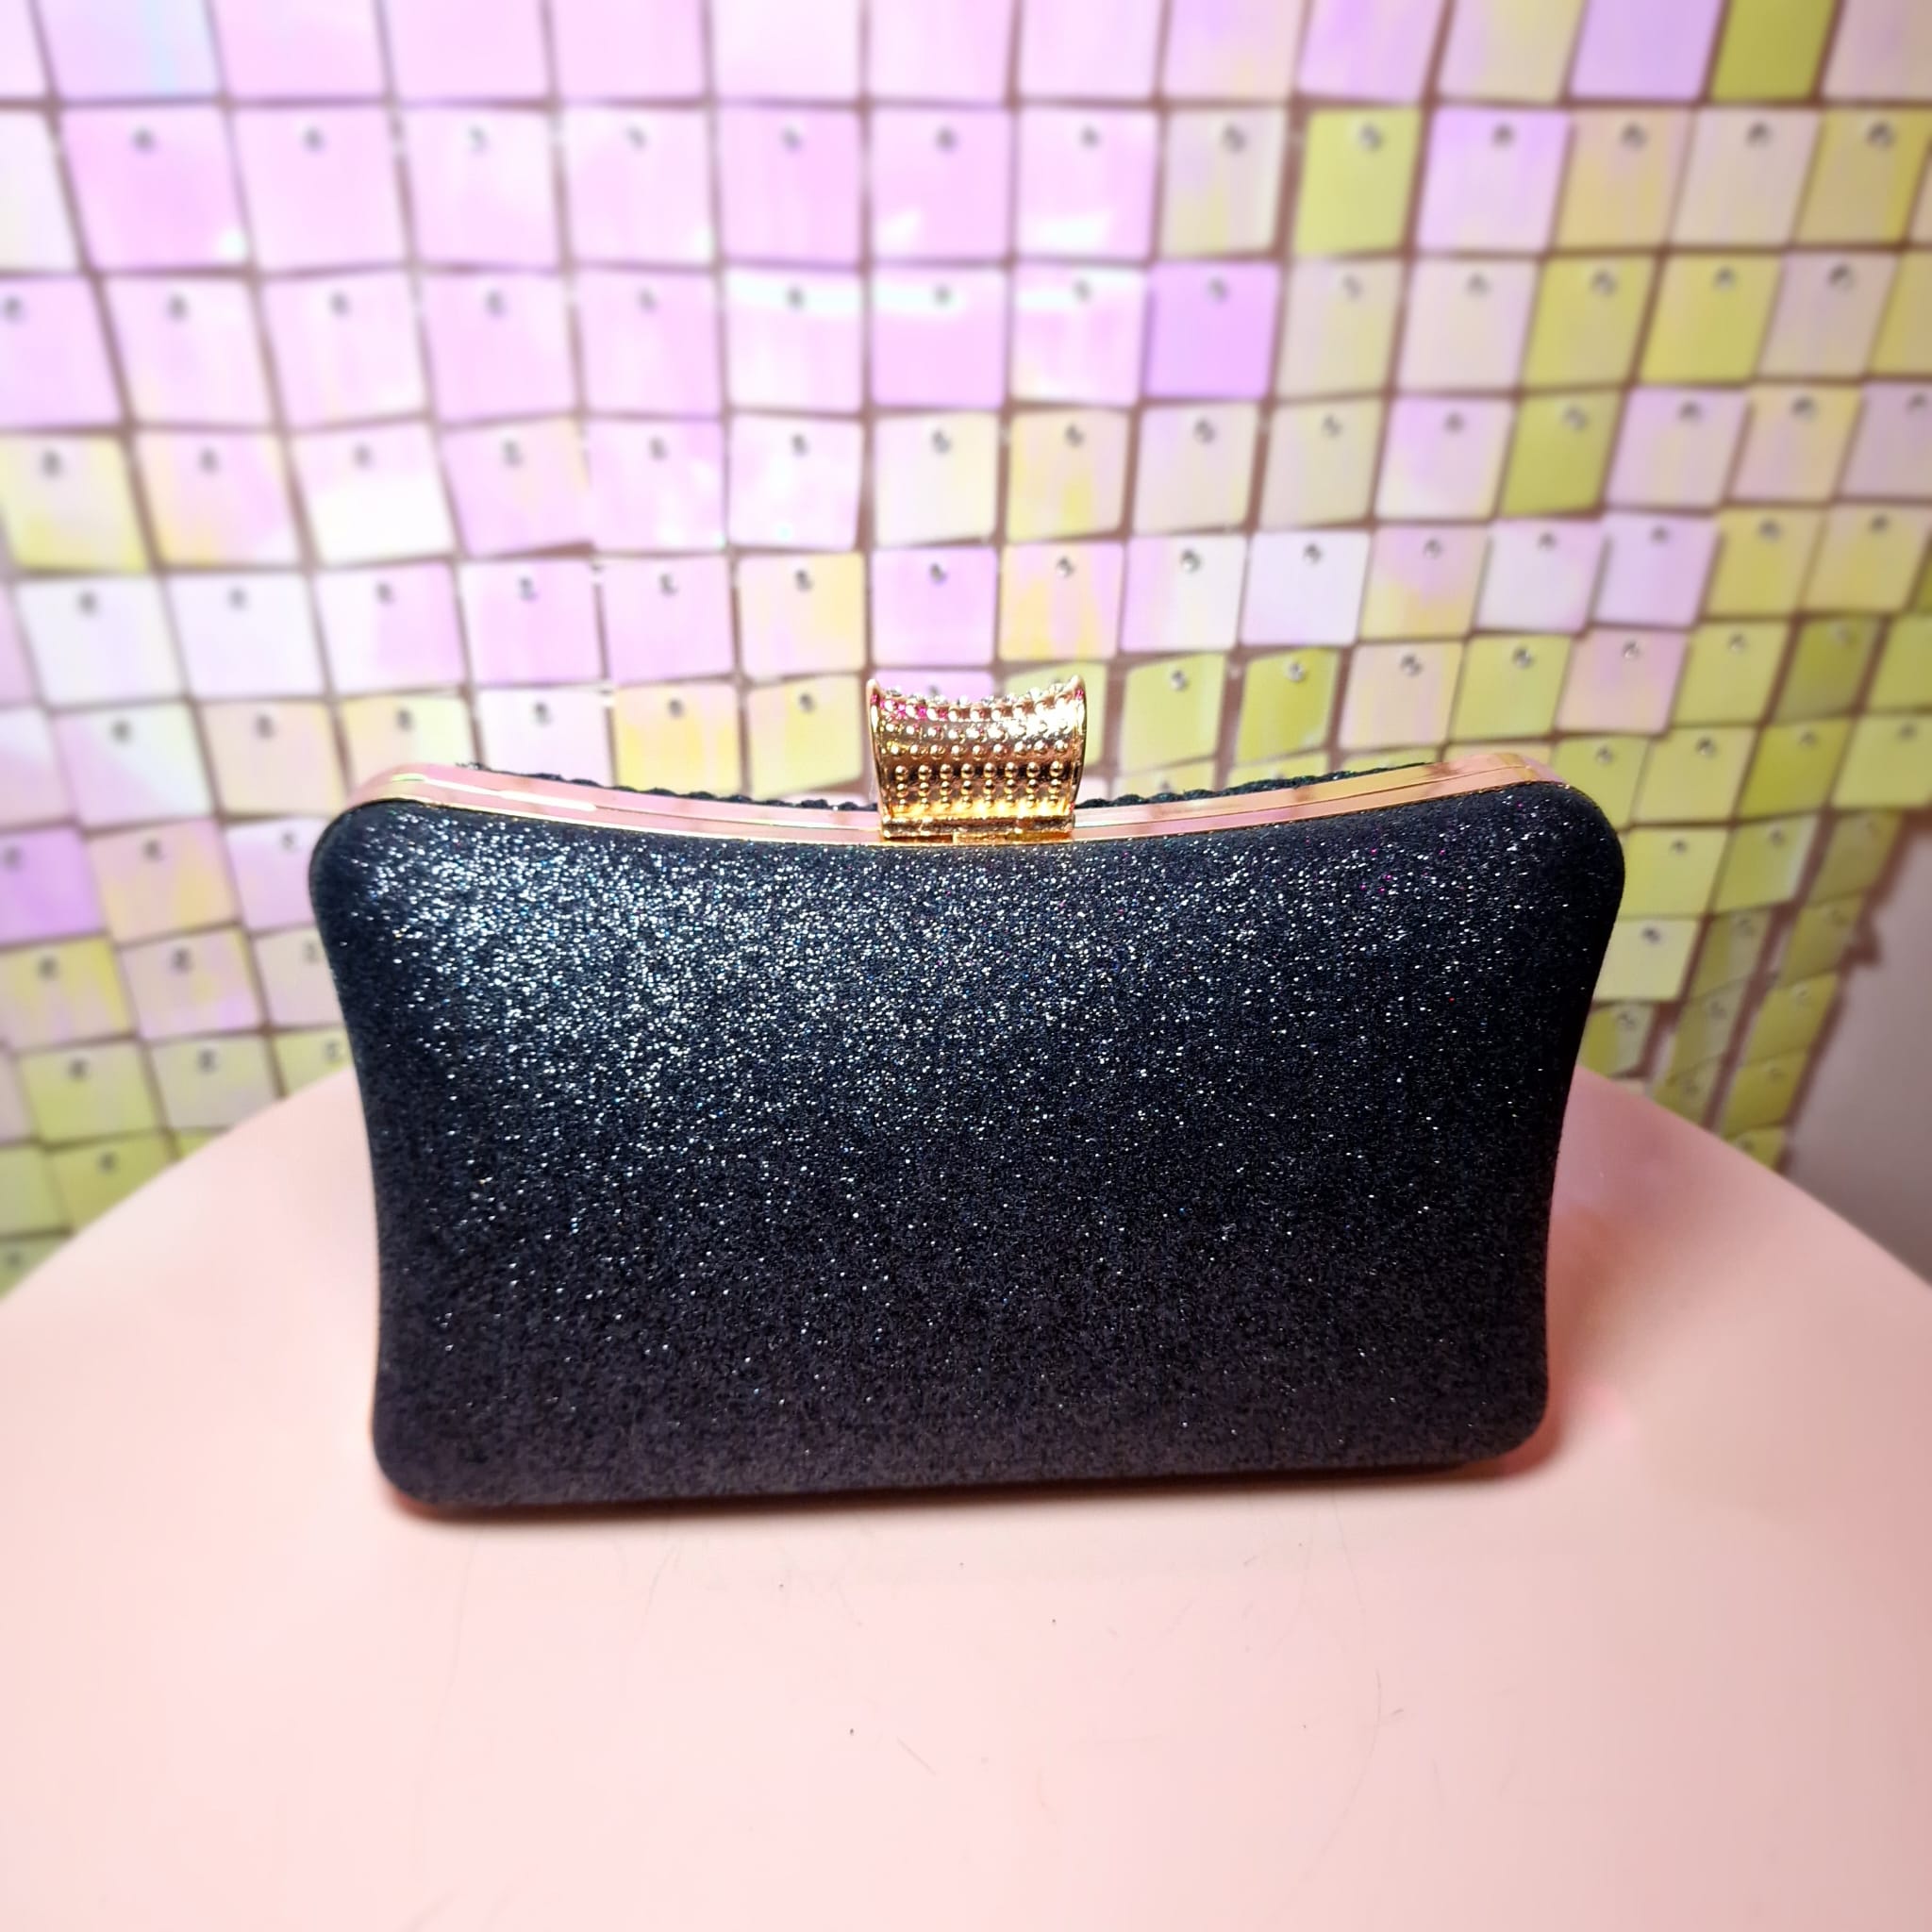 Vintage Black Glitter Clutch Handbag With Gold Hardware - Etsy